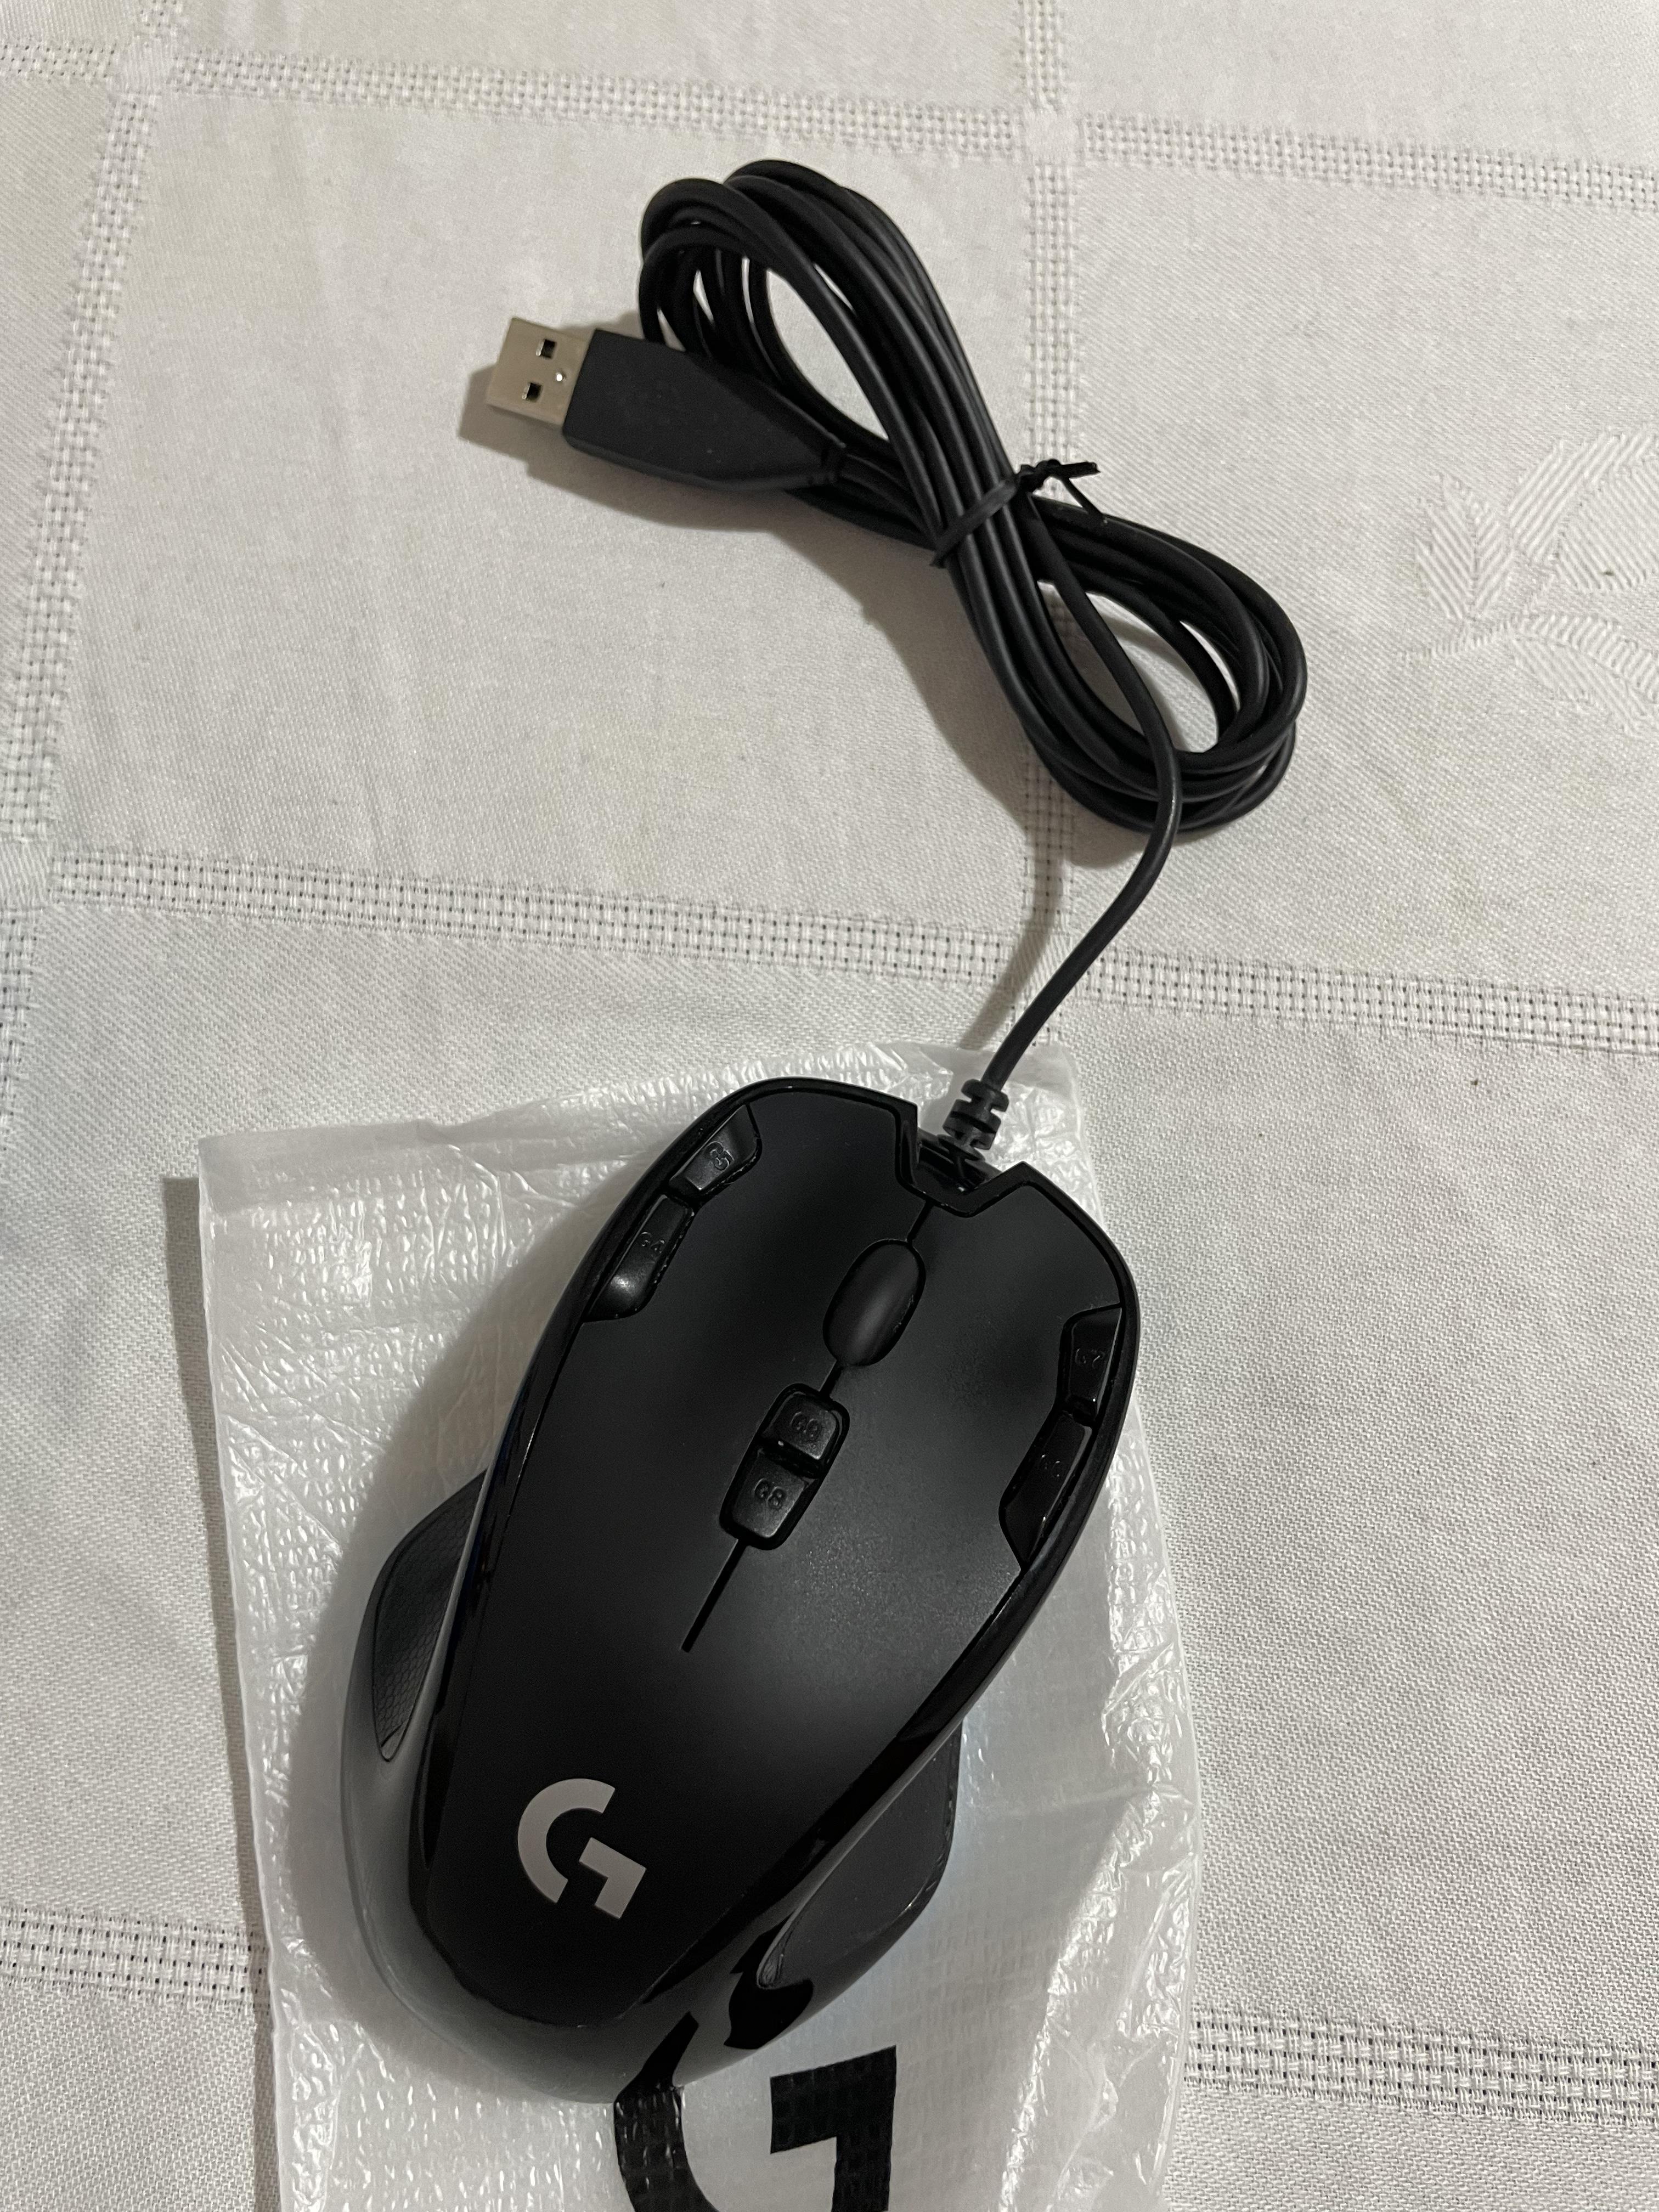 Satıldı!!! Logitech G300S Mouse | DonanımHaber Forum